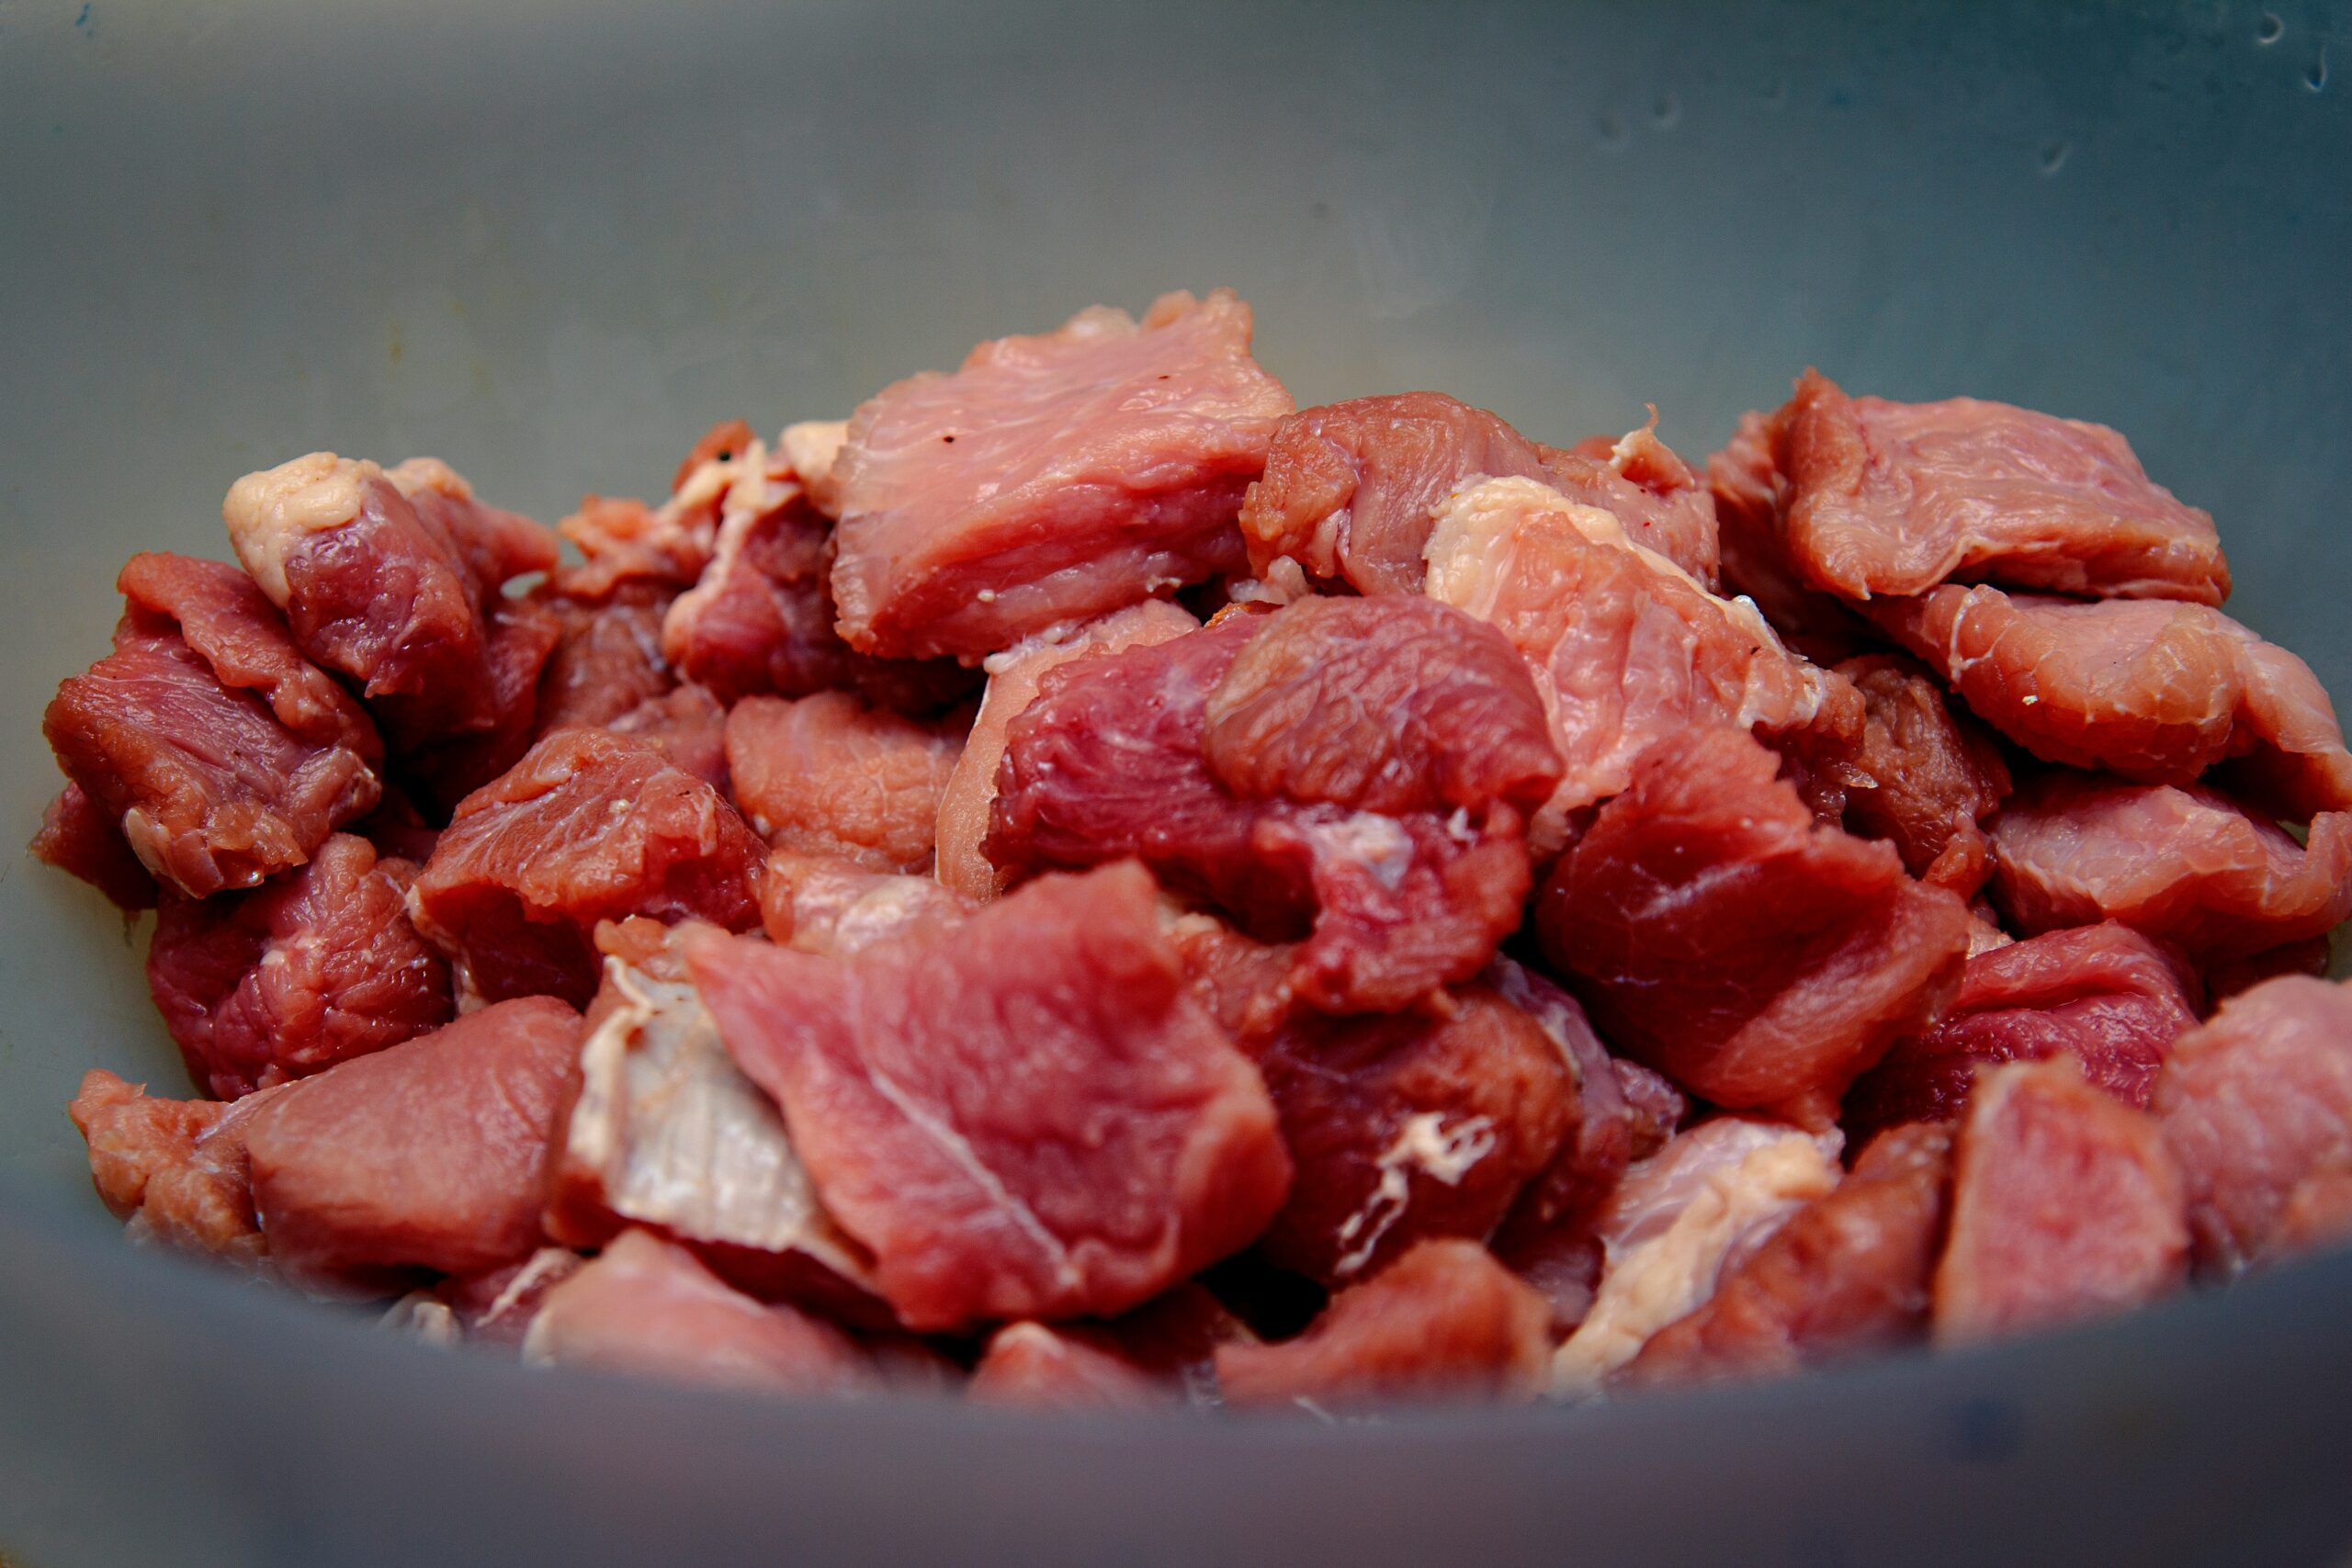 découvrez tout sur la viande rouge, son origine, ses bienfaits et des recettes délicieuses à base de viande rouge.